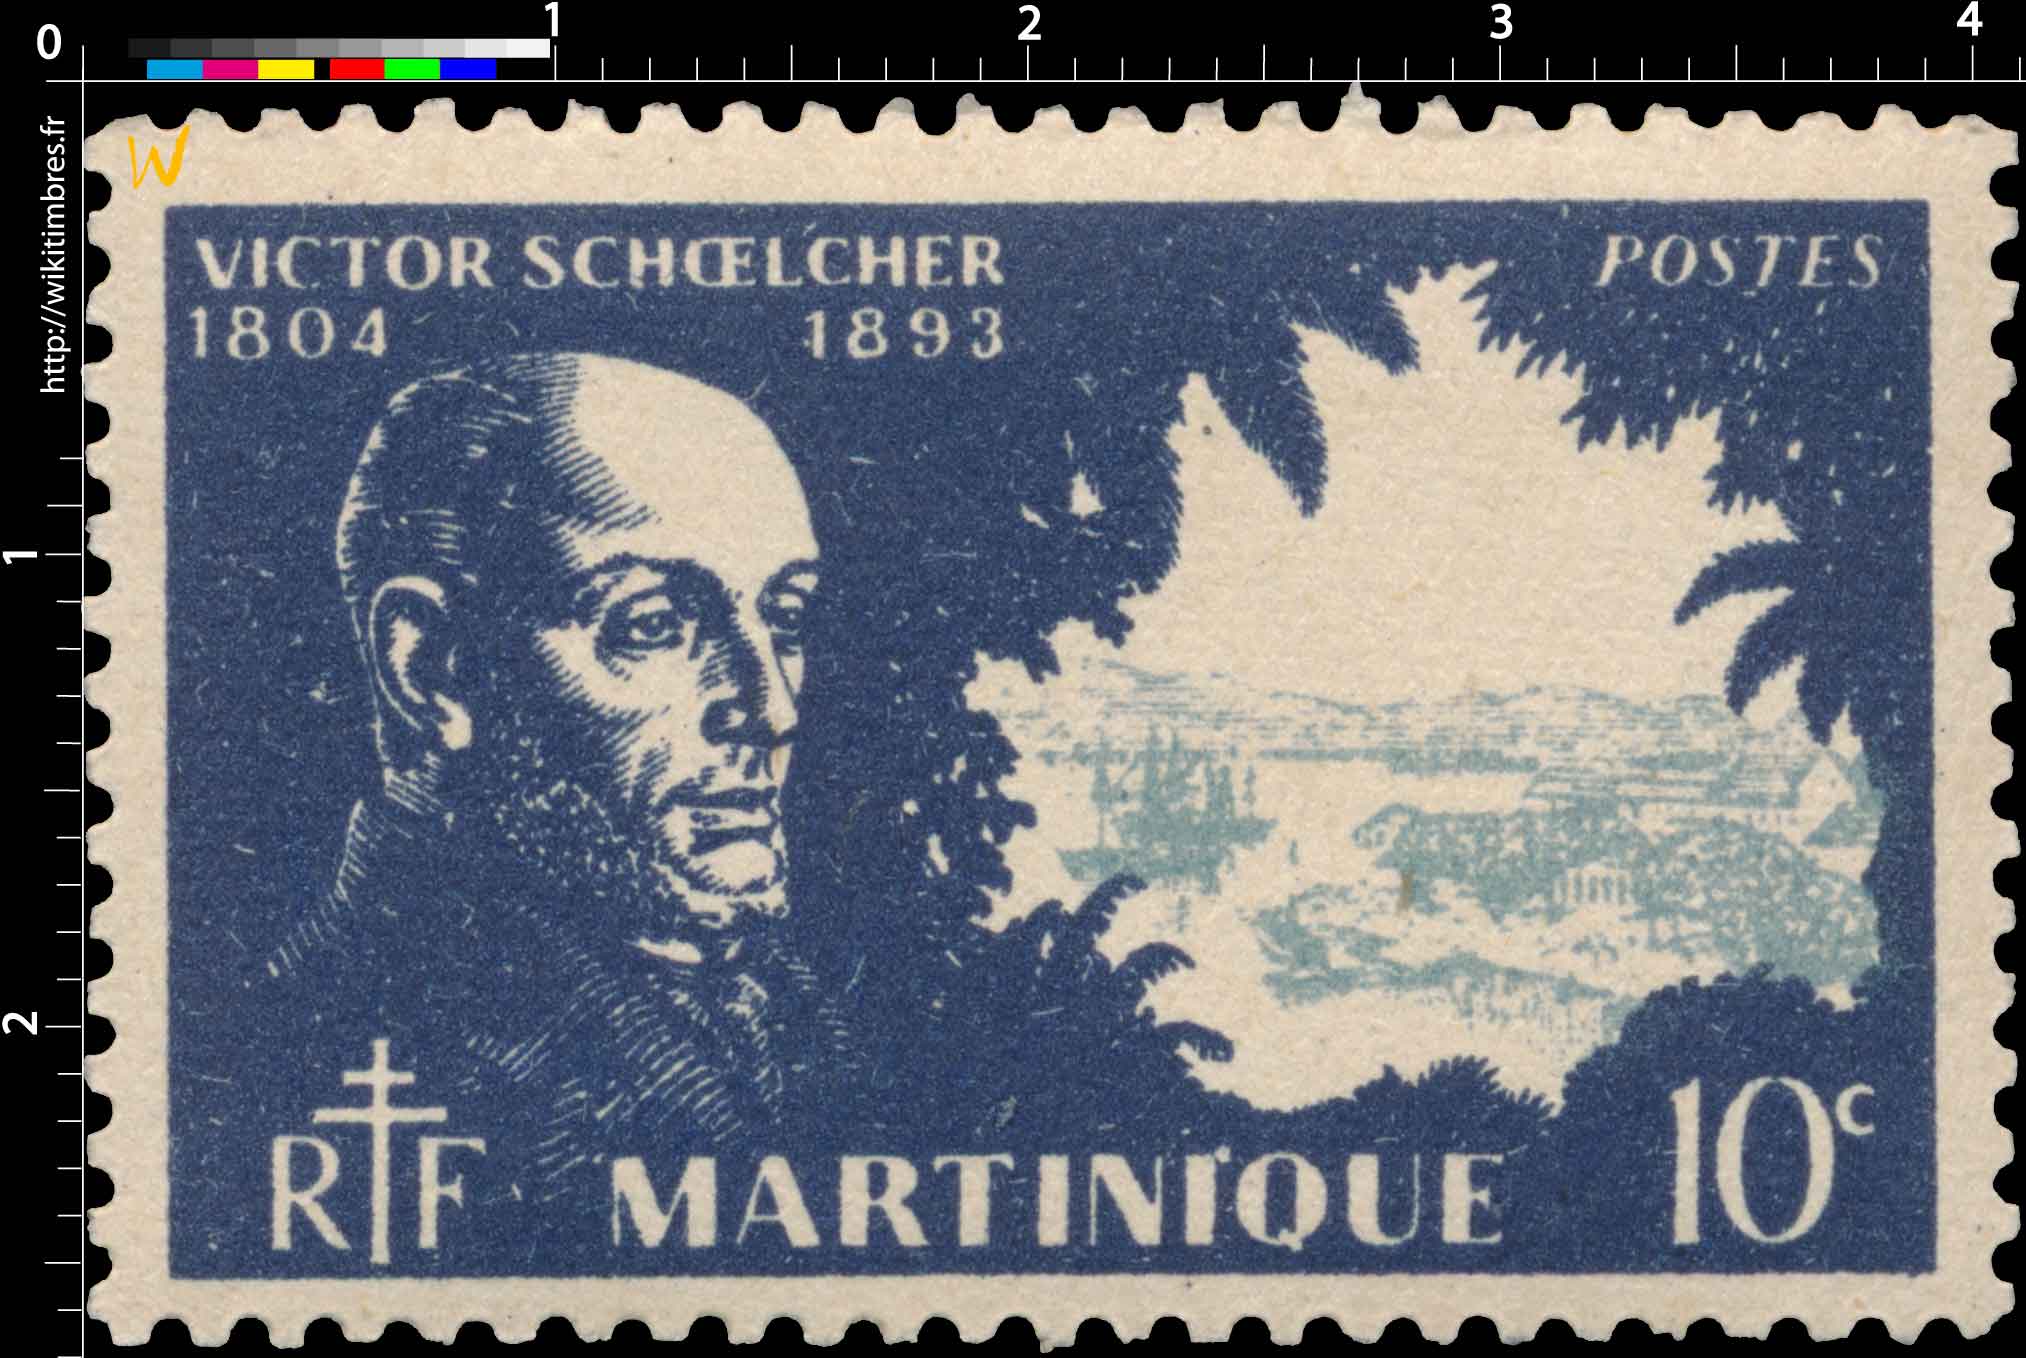 Martinique - Série de Londres - Effigie de Victor Schoelcher 